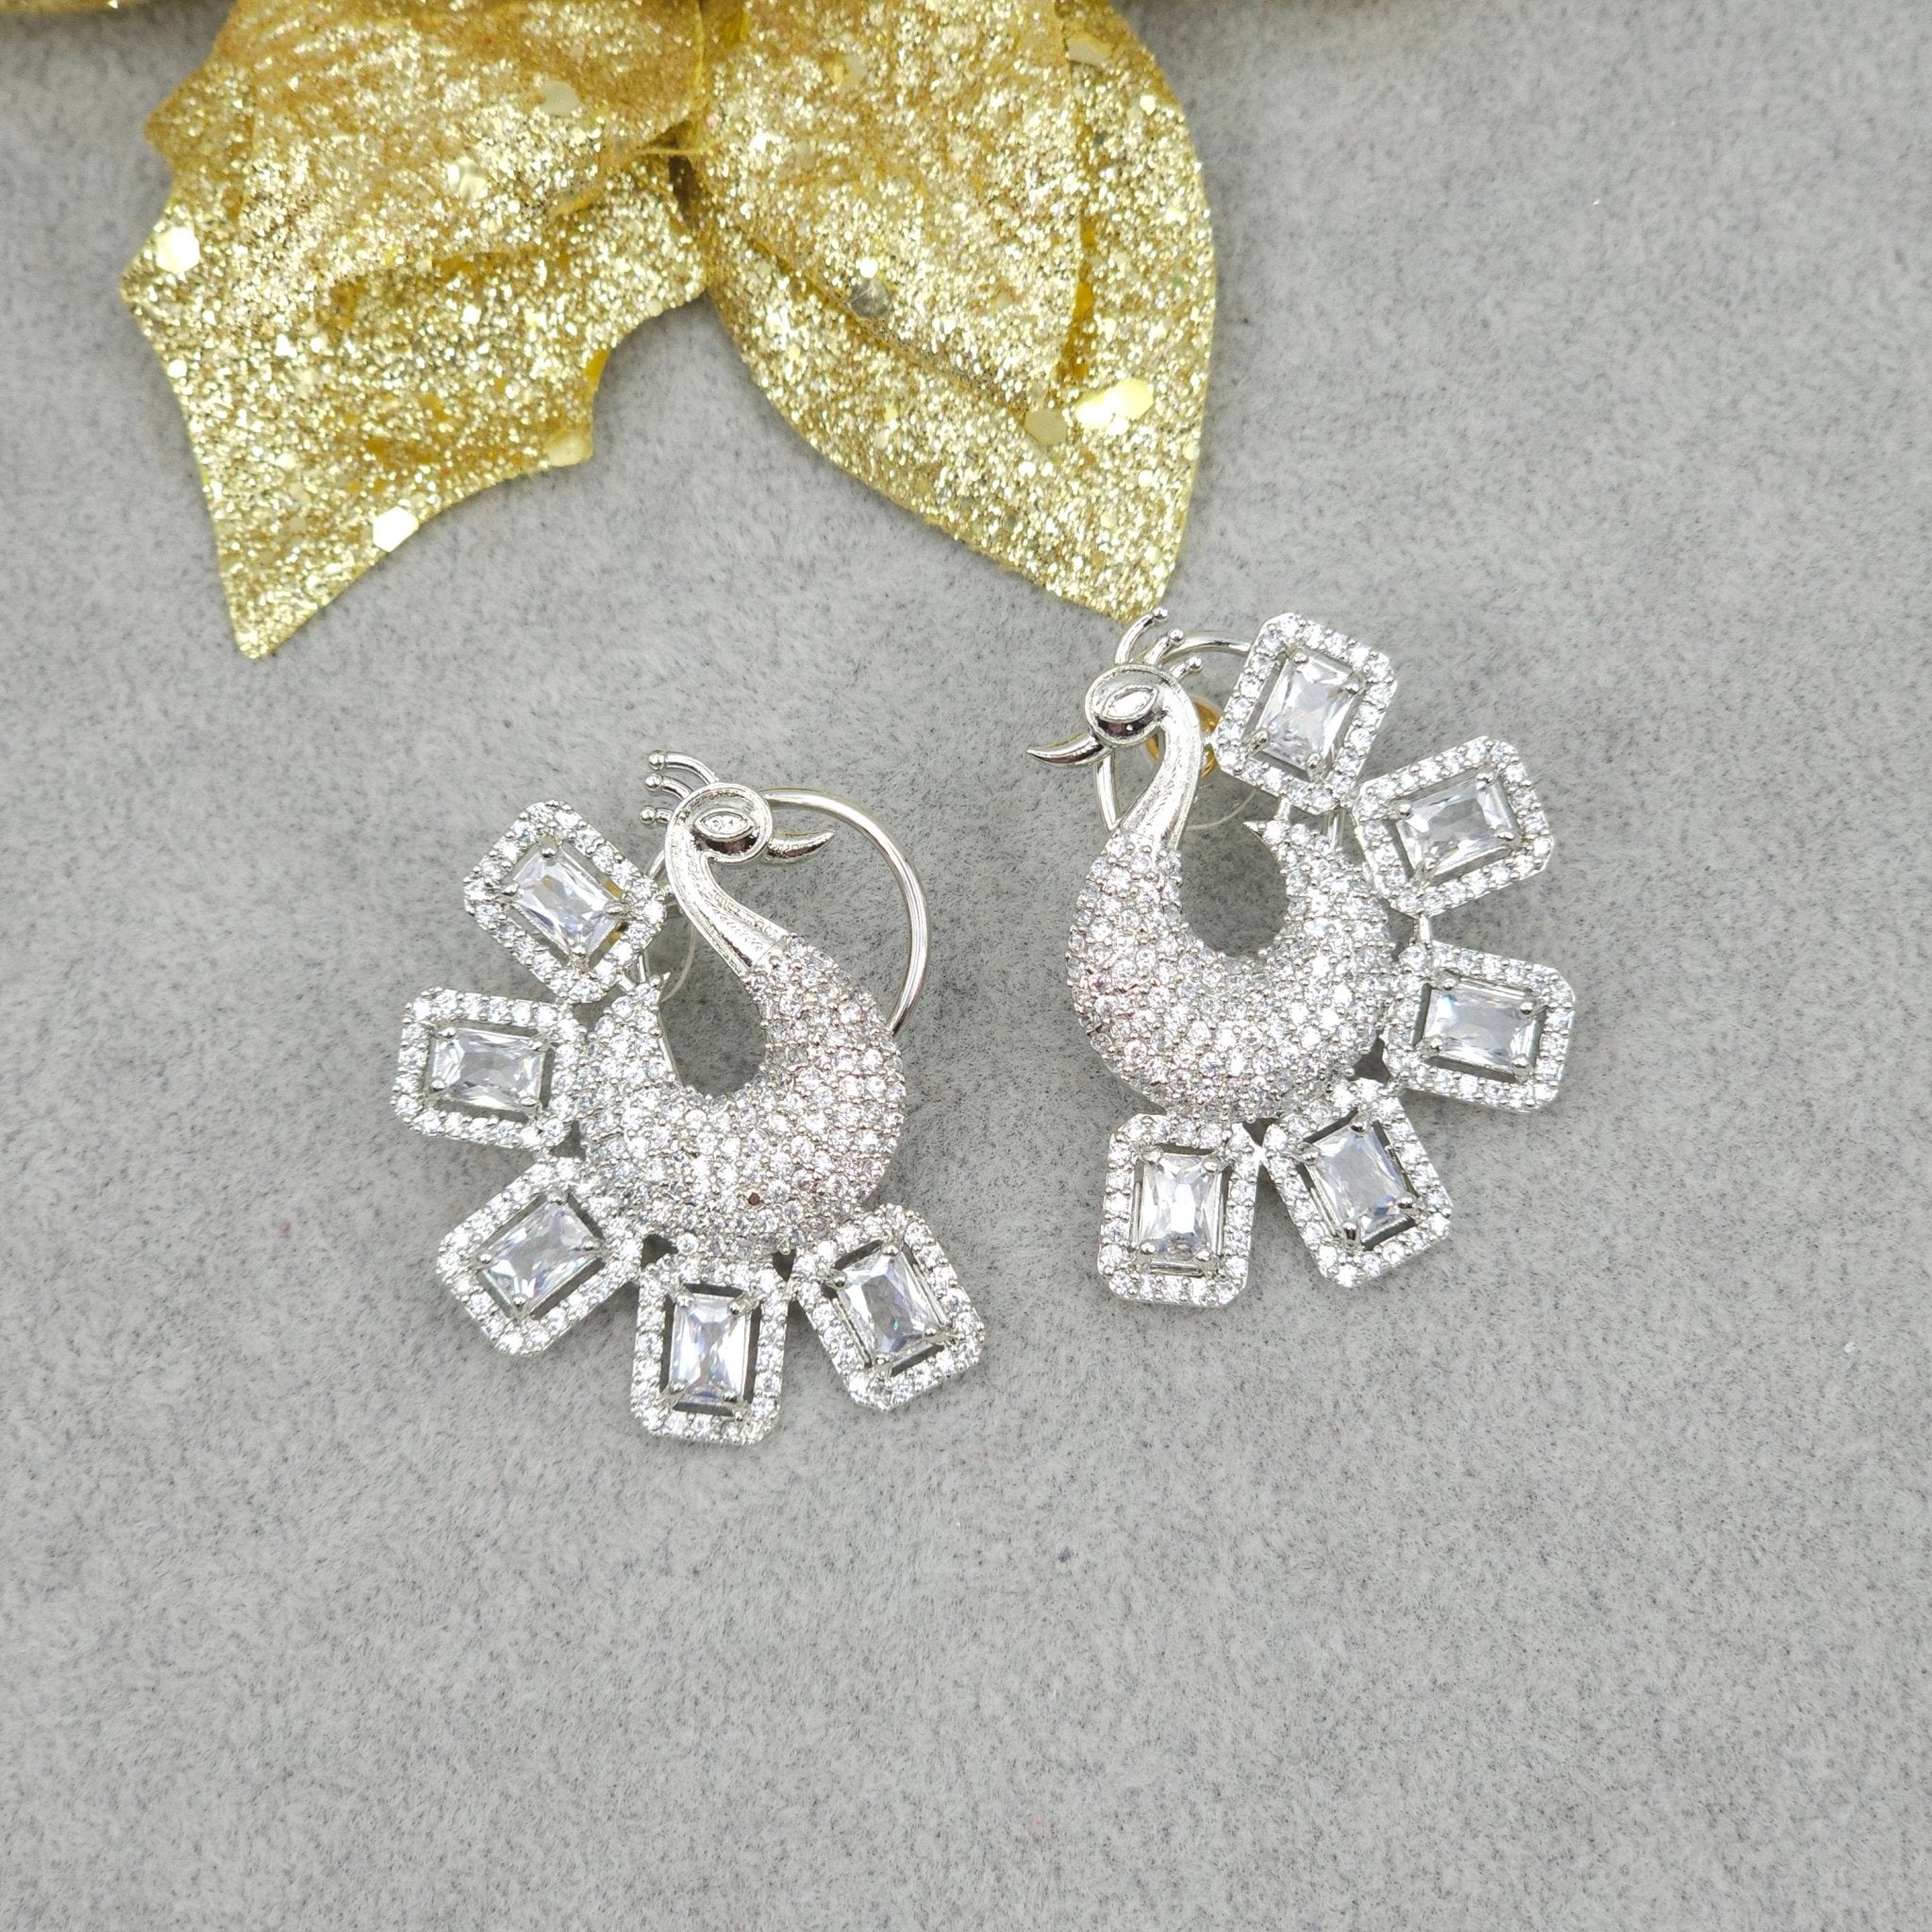 Peacock style Silver AD Stud Earrings - Fancy Fab Jewels